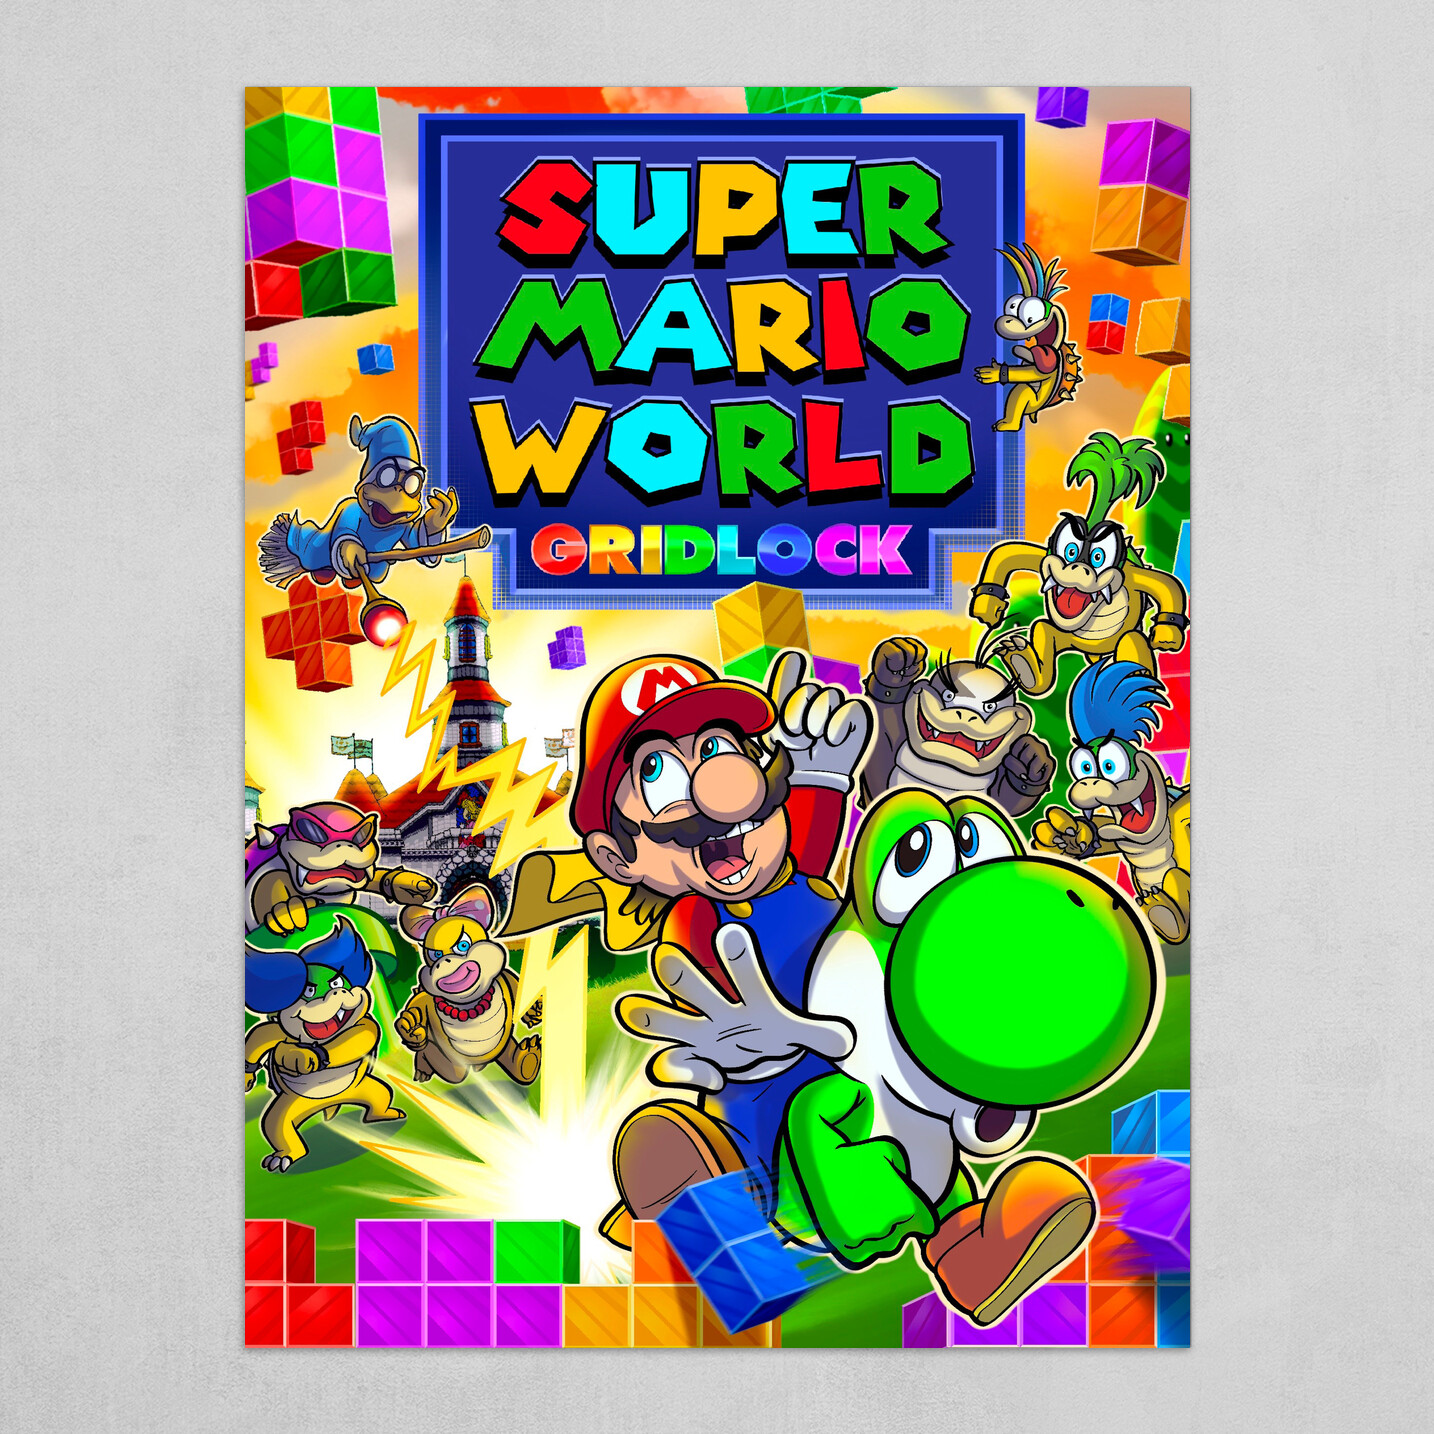 Super Mario World Gridlock by Matthew Kim